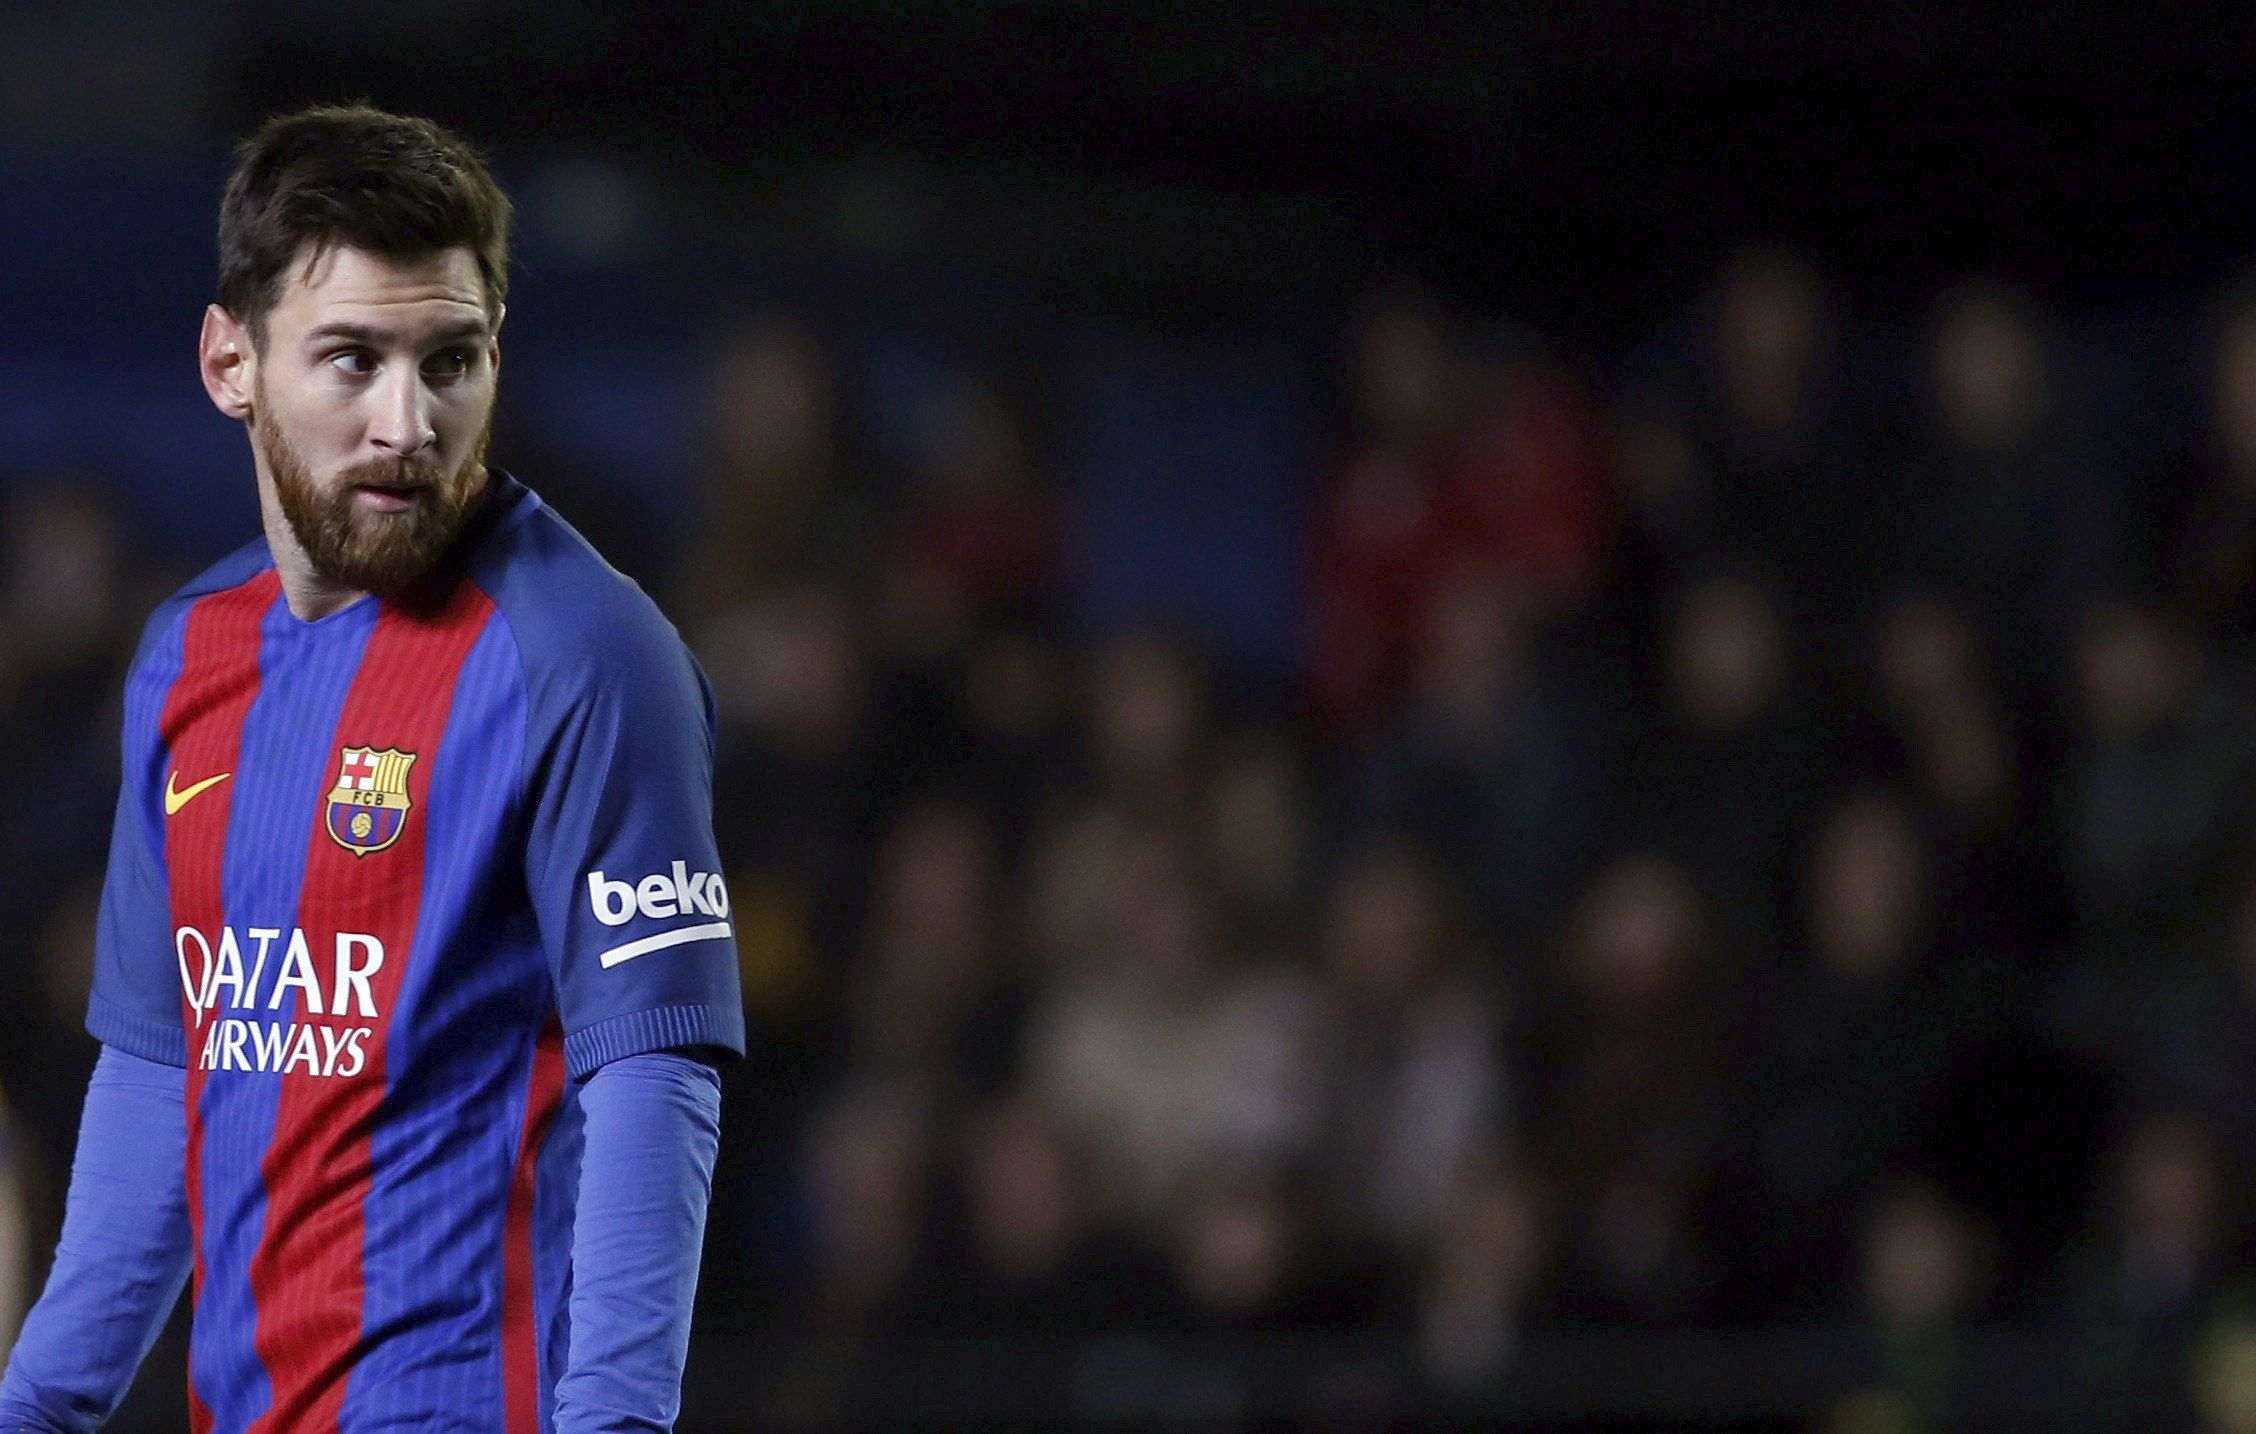 El Barça, sobre la renovació de Messi: “Cap fred i sentit comú”